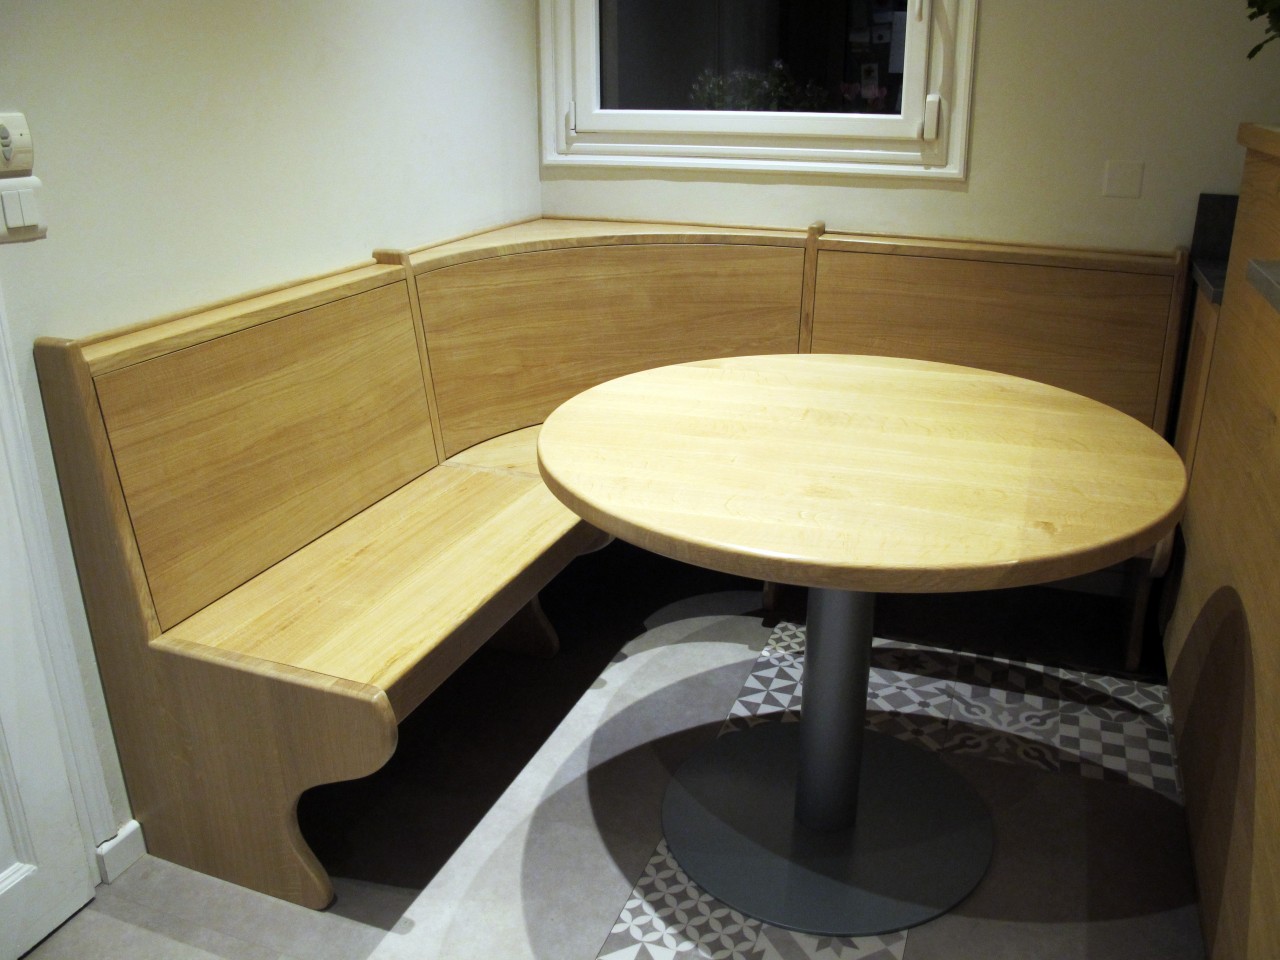 La table en chêne massif supporté par un pied central en acier prend place au centre de la banquette.